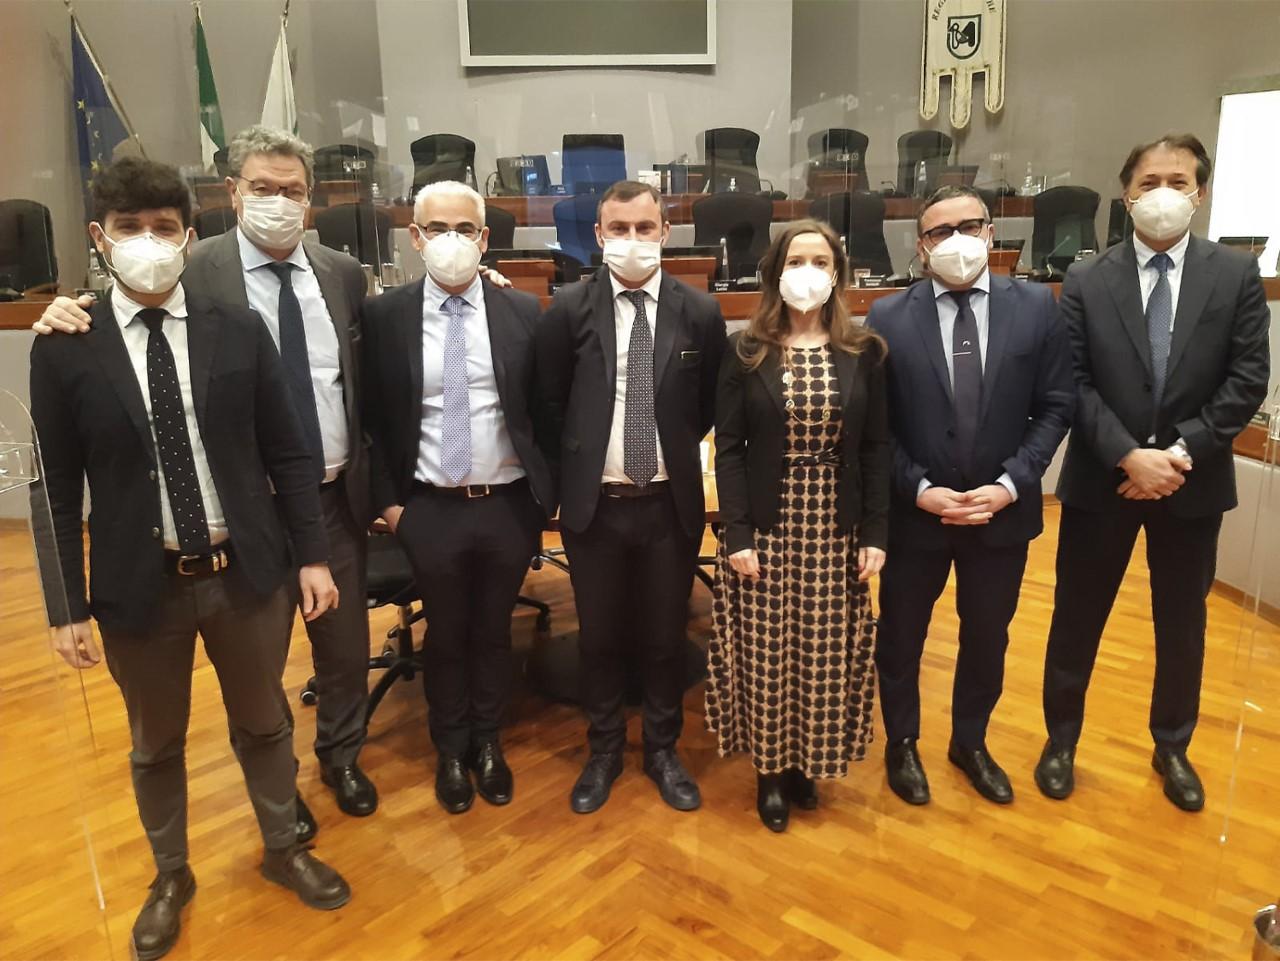 Crisi Ucraina mozione di Fratelli d’Italia a disposizione dell’Aula consiliare regionale per valutare anche gli impatti nelle Marche